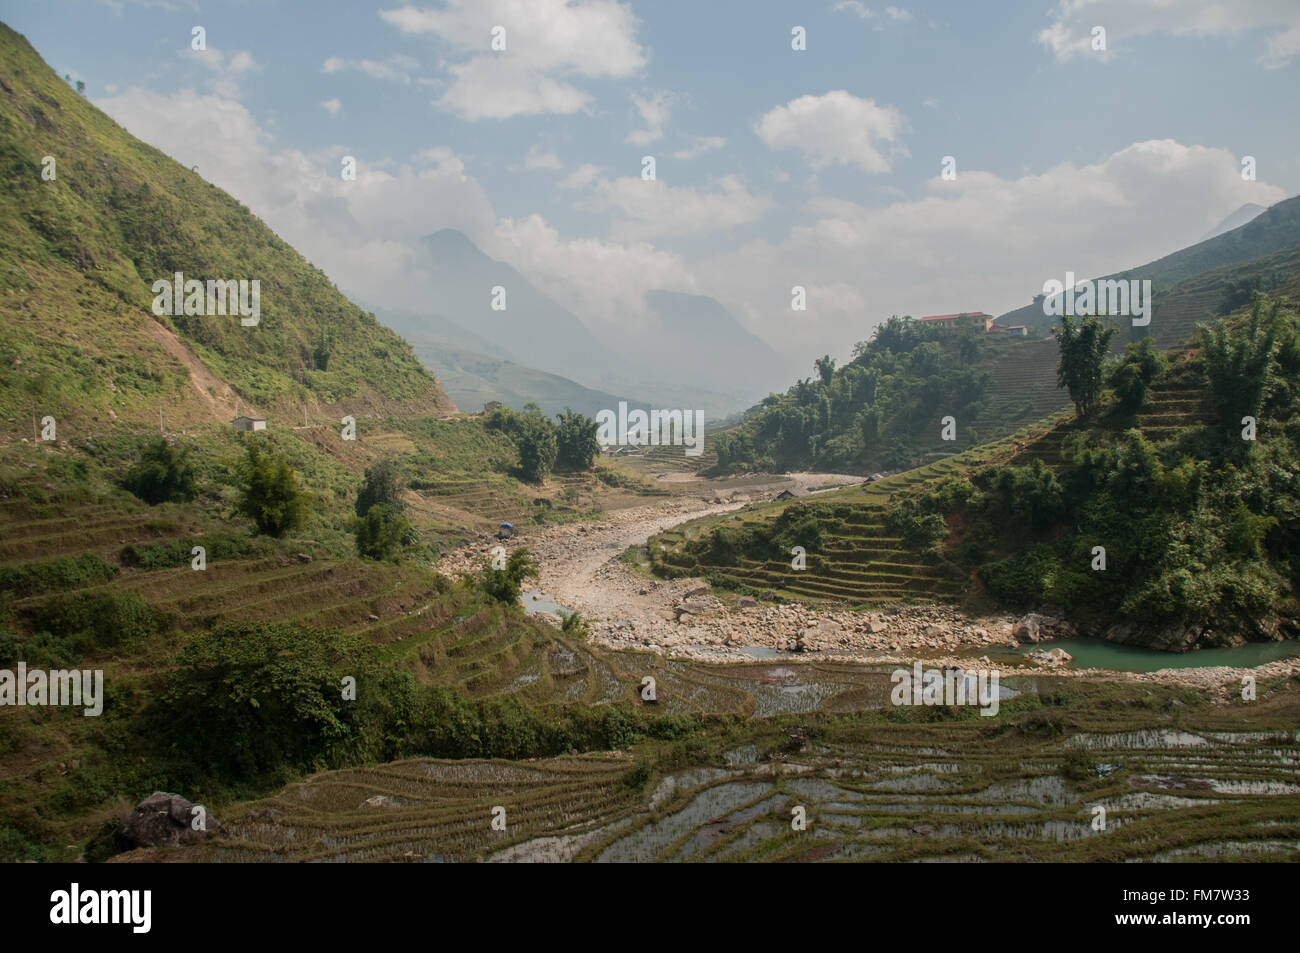 Une vue sur les rizières et les collines de Sapa, Vietnam Banque D'Images